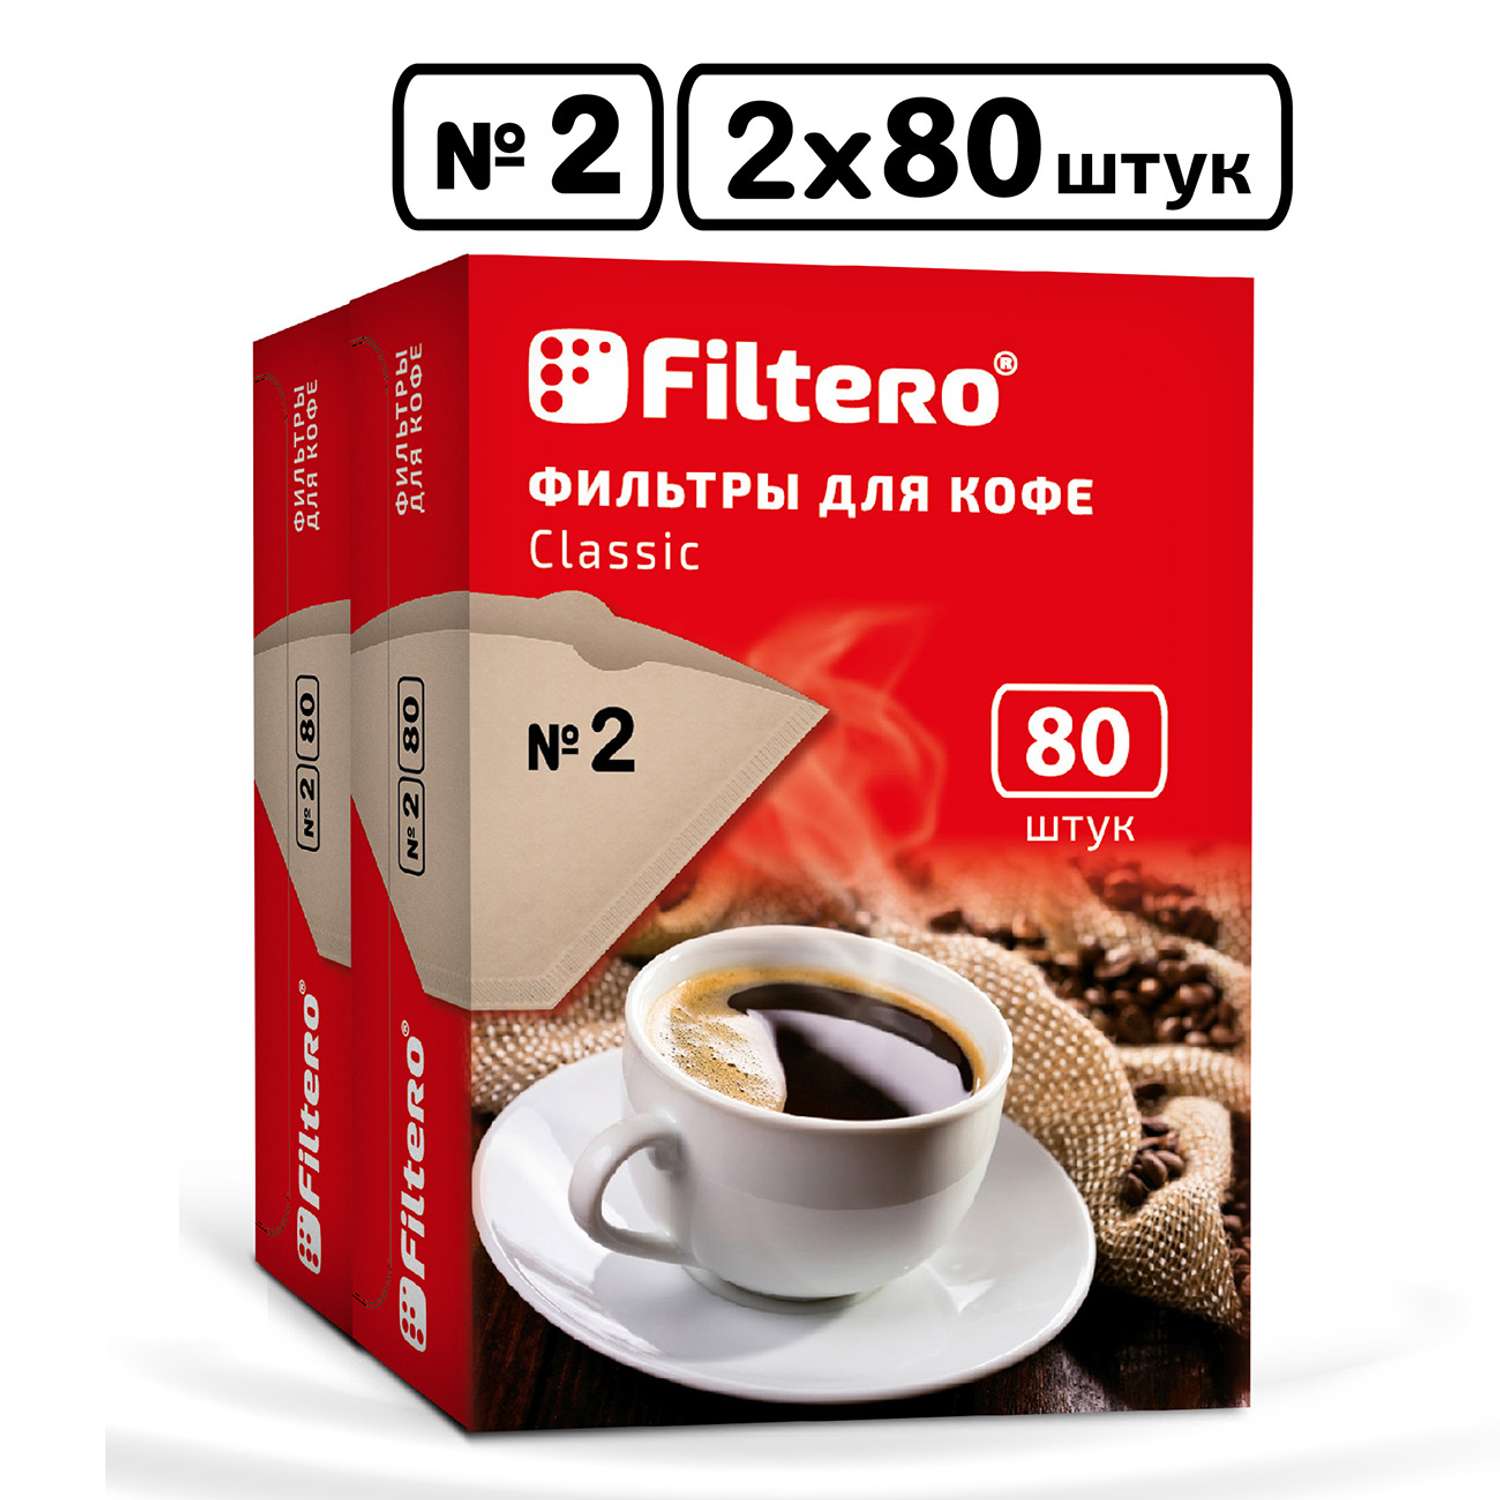 Комплект фильтров Filtero для кофеварки №2/160 коричневые Classic - фото 1